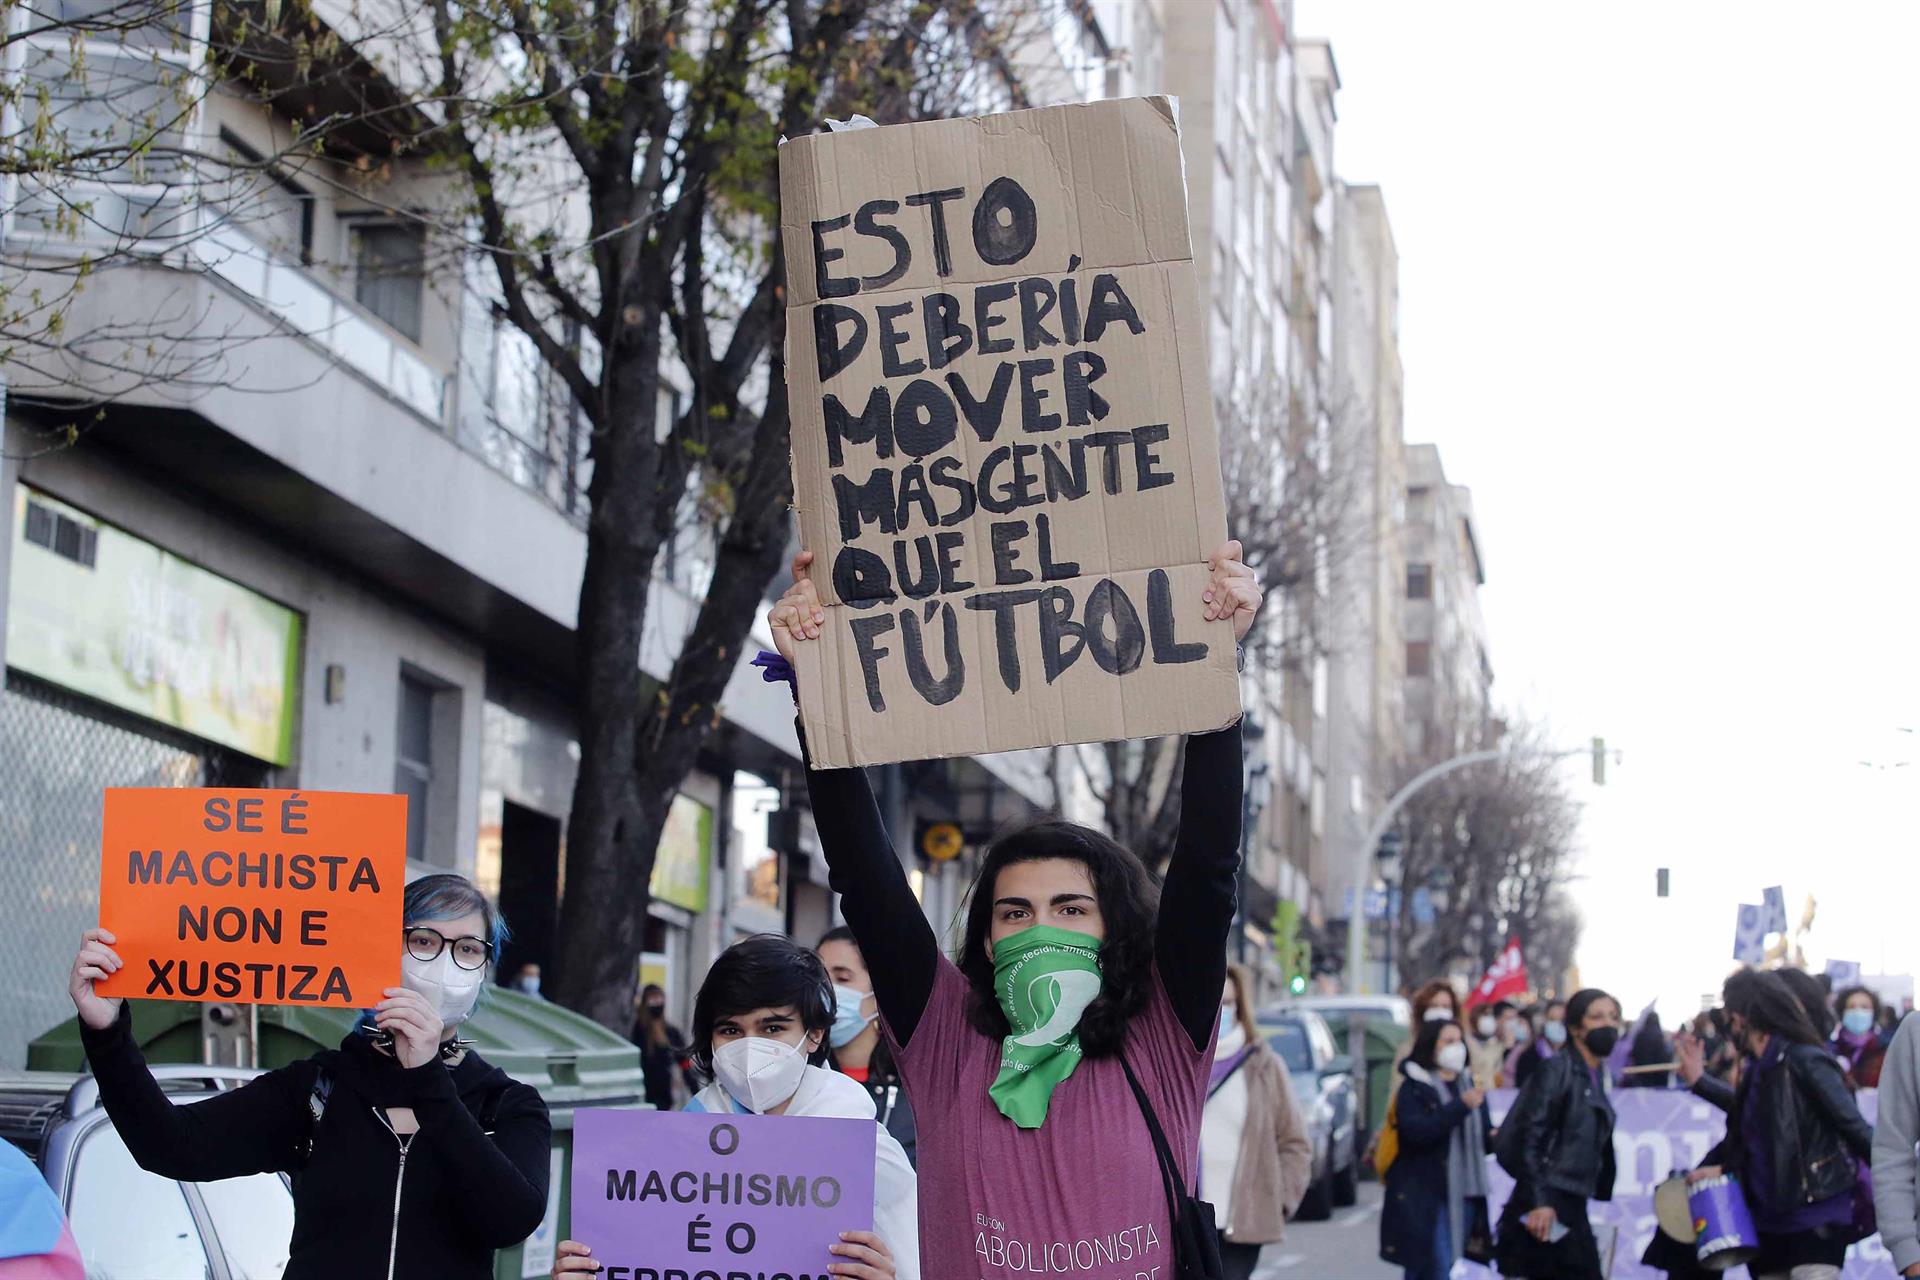 Una mujer sostiene una pancarta donde se lee "Esto debería mover más gente que el fútbol" durante una manifestación feminista - Europa Press - Archivo